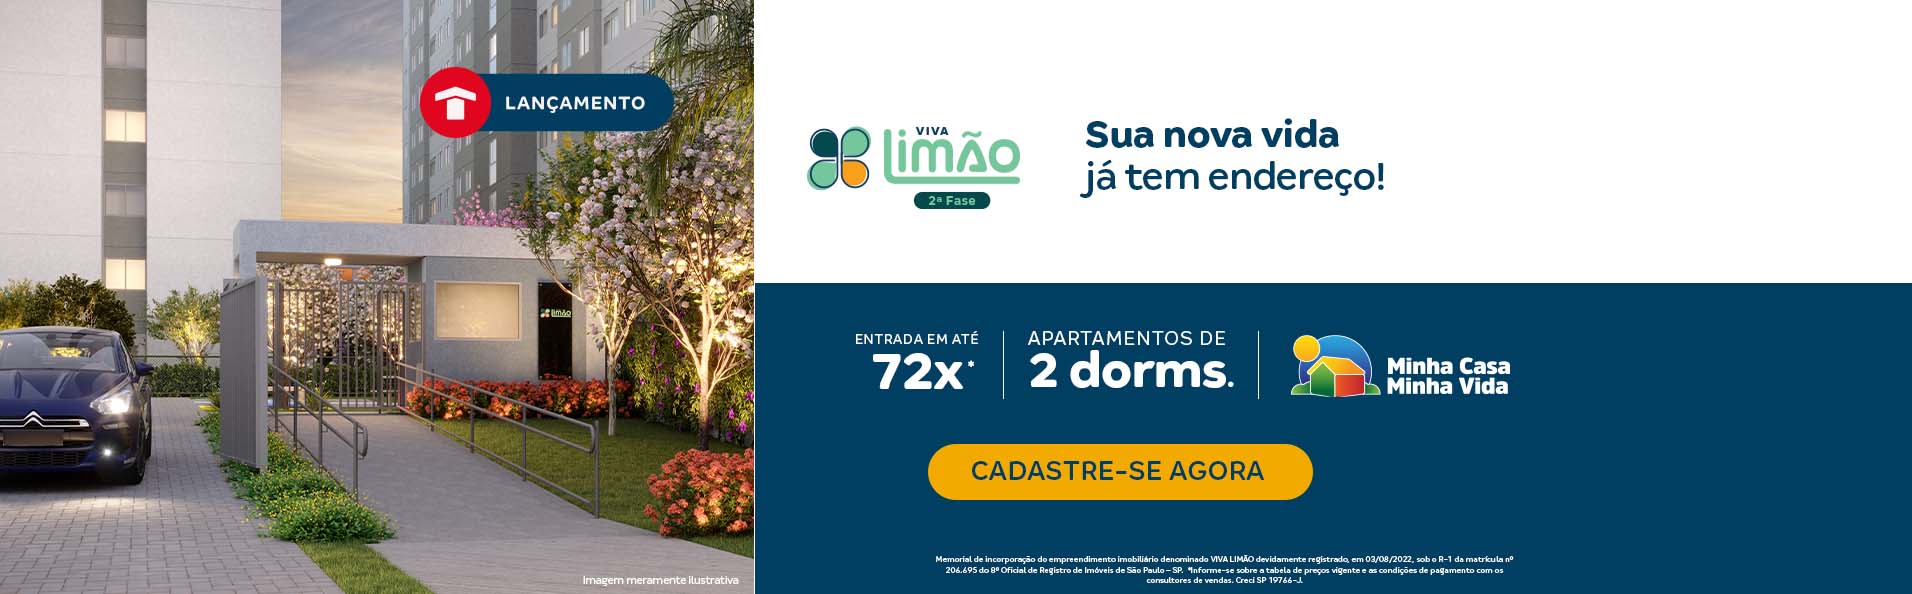 Descubra como é morar no bairro do Limão, na Zona Norte de SP, no lançamento da Construtora Tenda, Viva Limão!